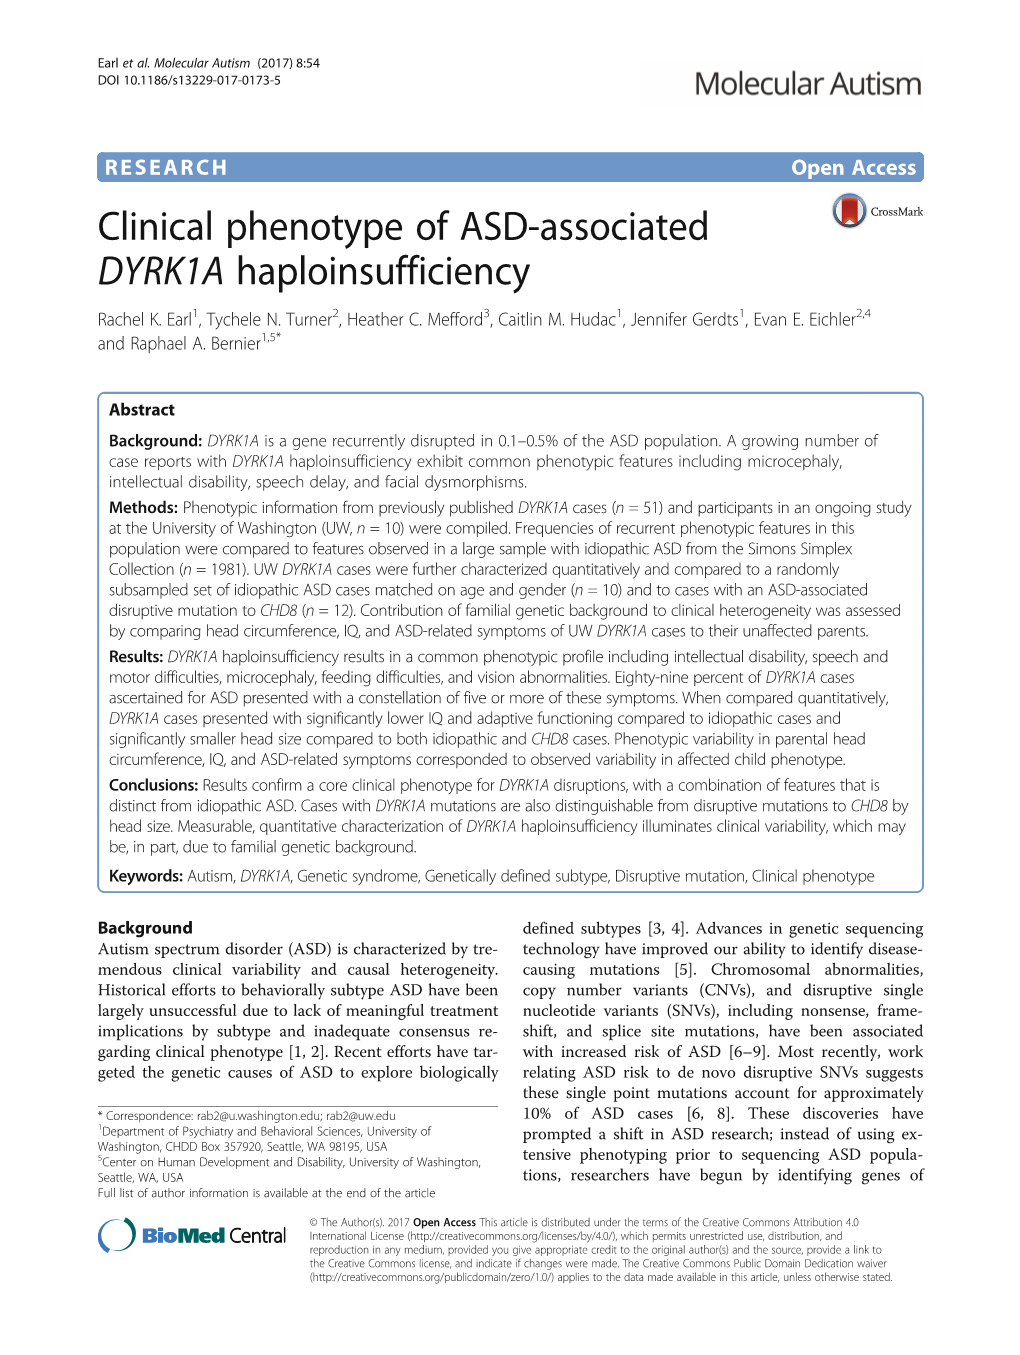 Clinical Phenotype of ASD-Associated DYRK1A Haploinsufficiency Rachel K